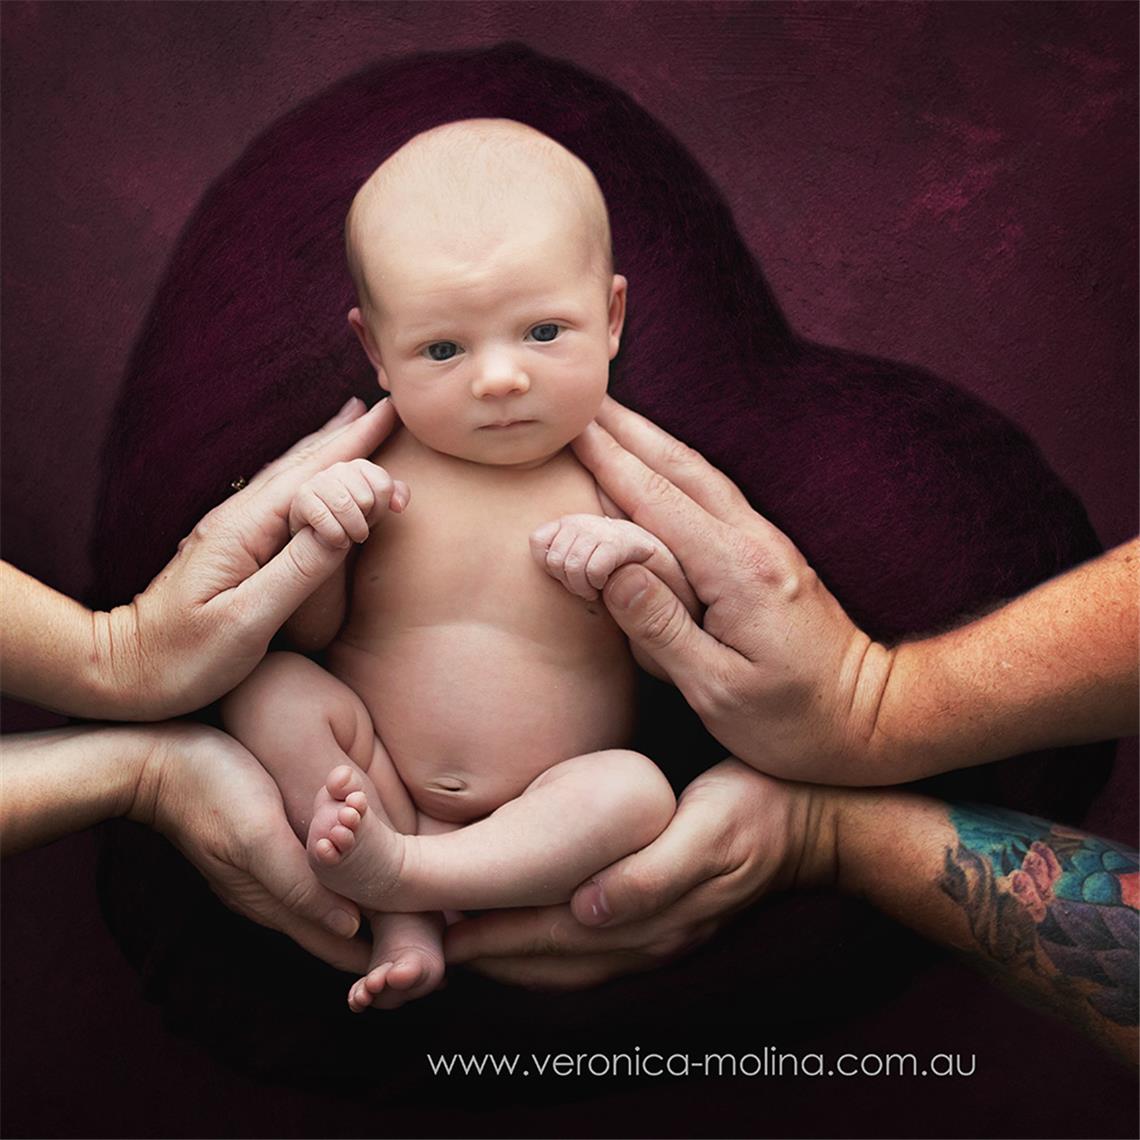 Newborn baby photographer Brisbane - Photo 22